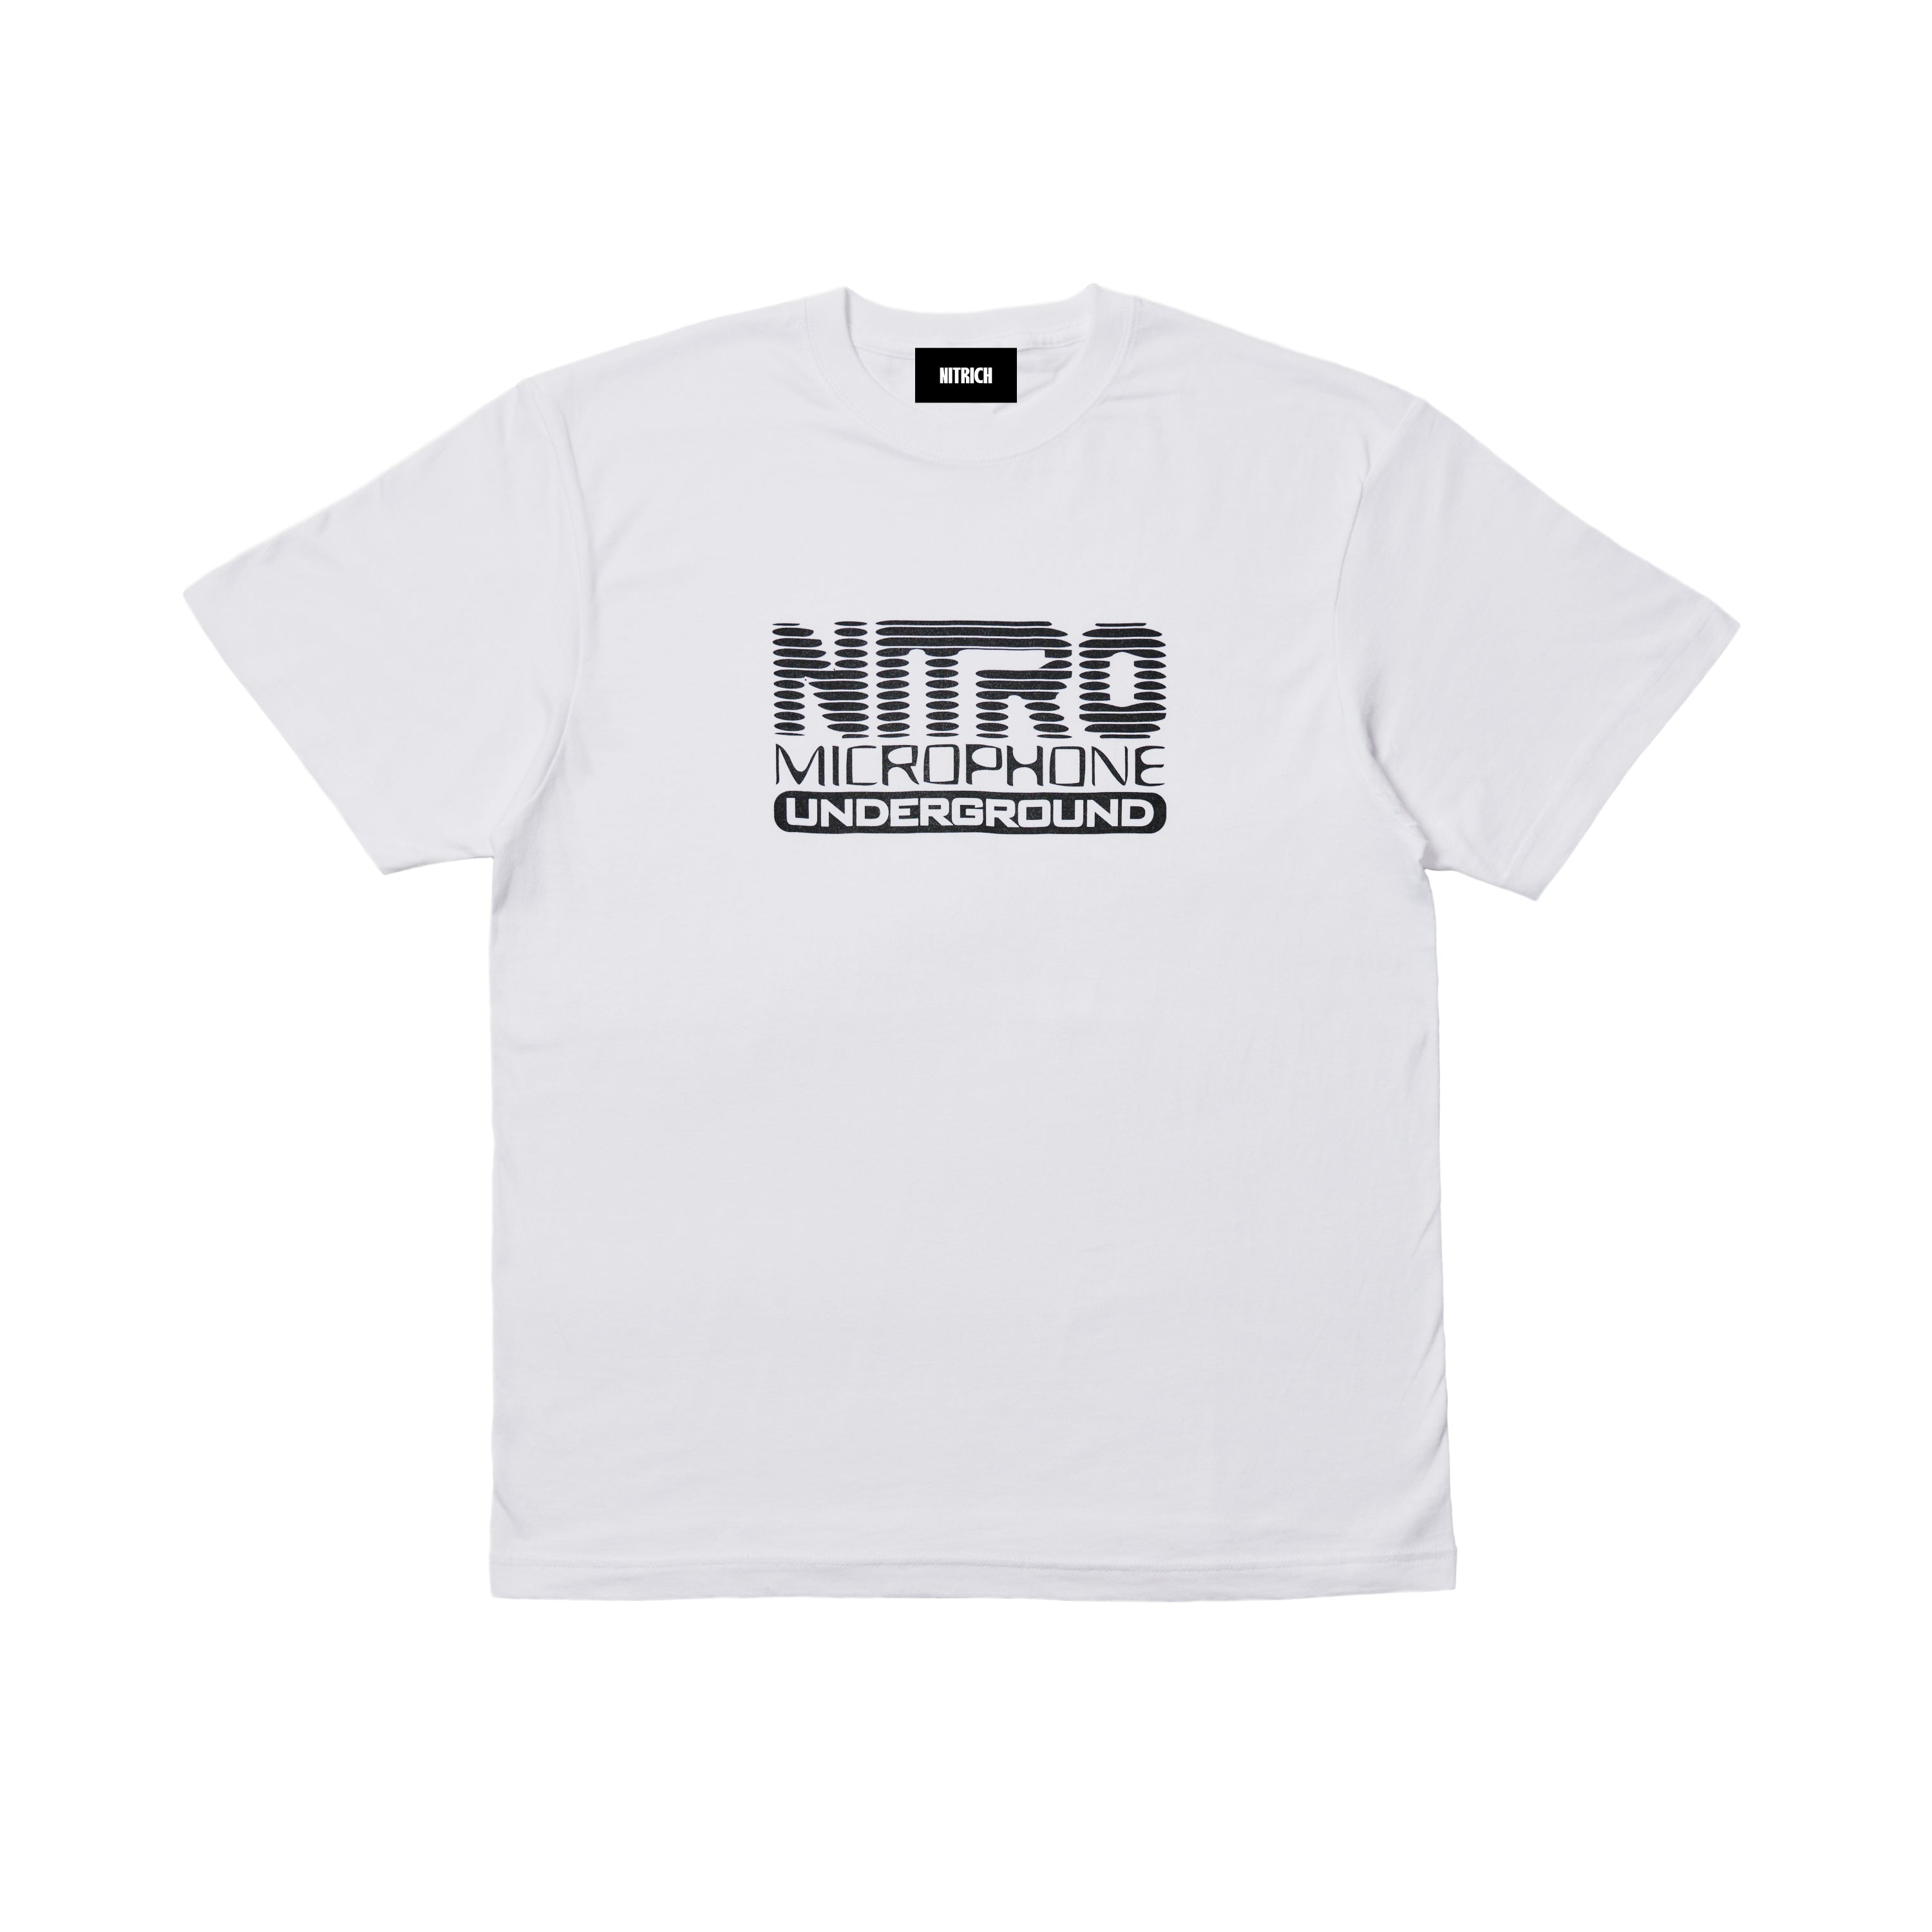 NITRO MICROPHONE UNDERGROUND Tシャツ XLサイズ - トップス